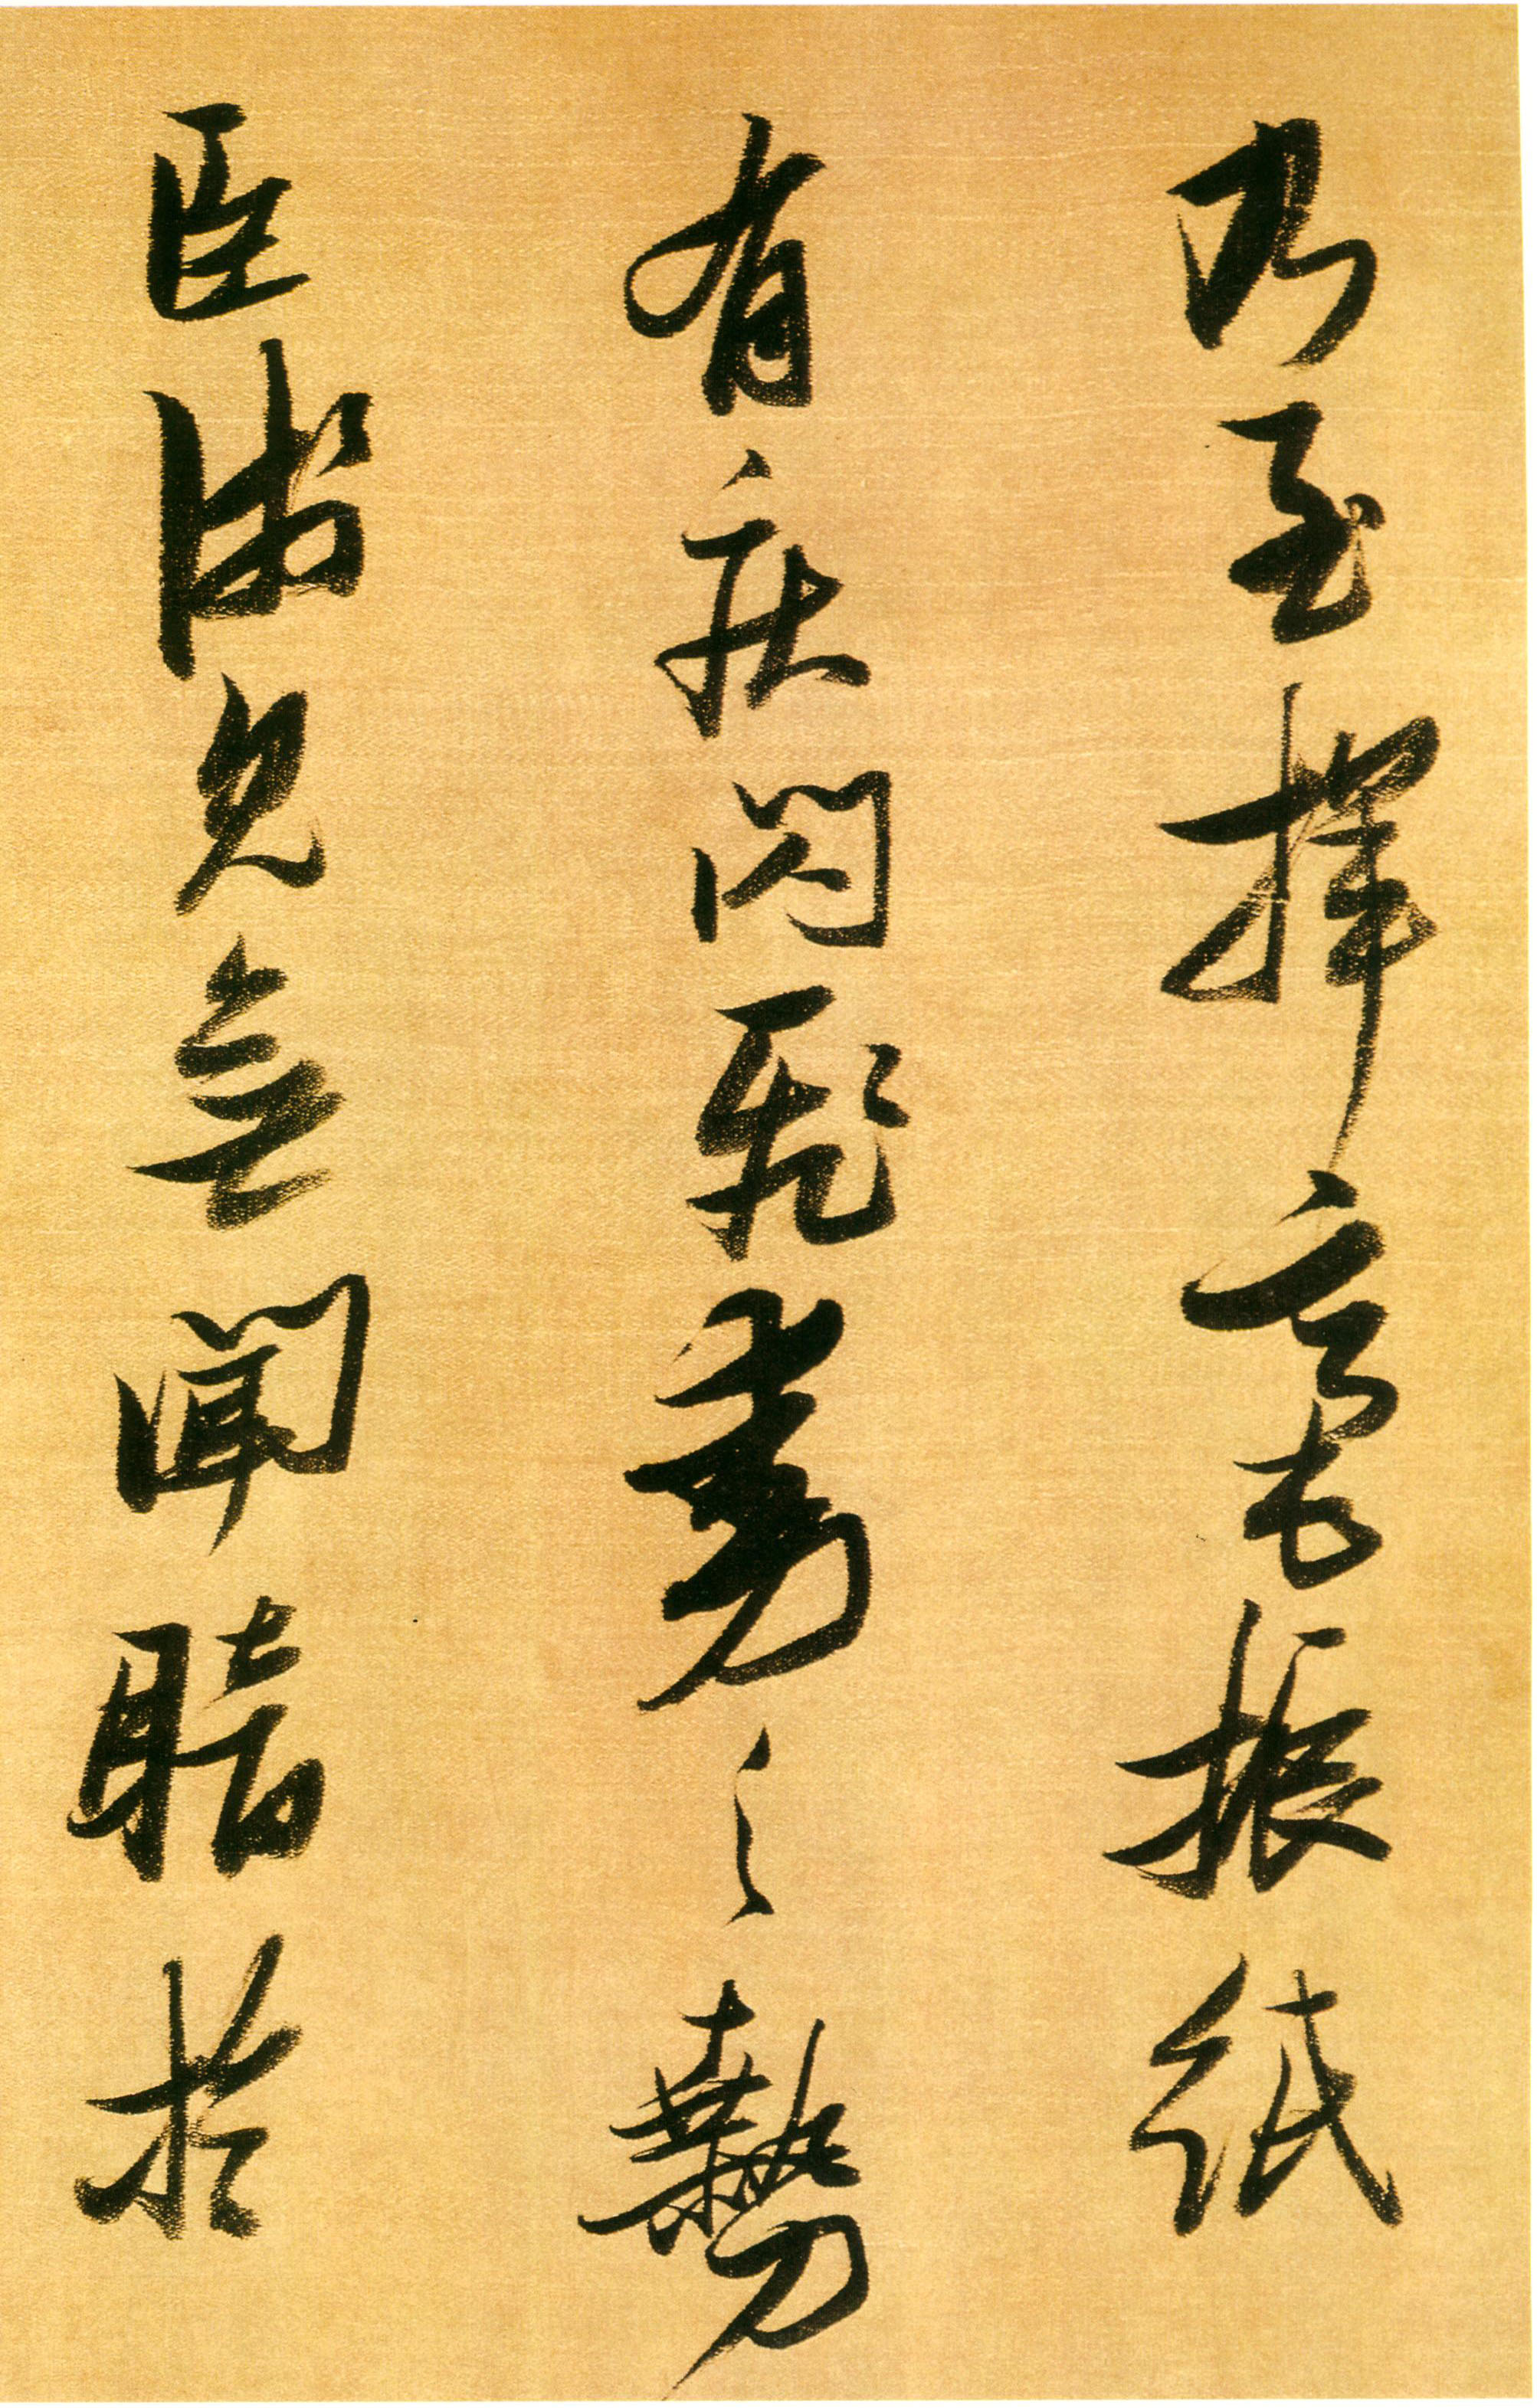 张瑞图《行书论书卷》-安徽省博物馆藏 (图13)